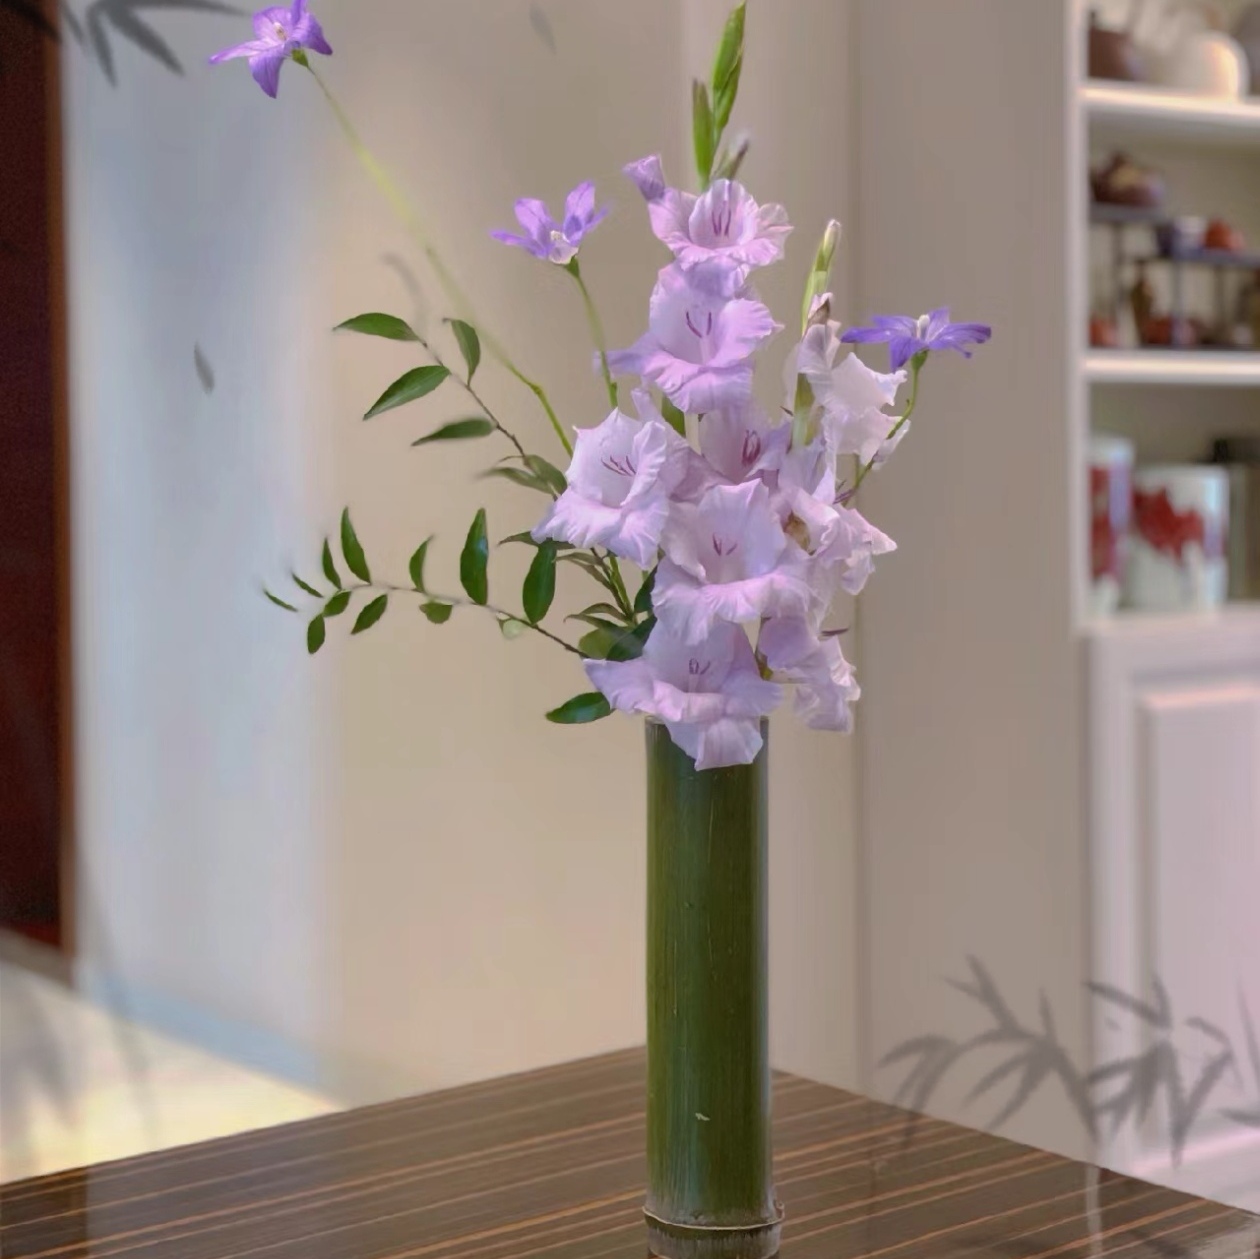 新鲜竹筒花瓶插花筒国风桌面摆件中式环创花艺道具绿色竹子装饰